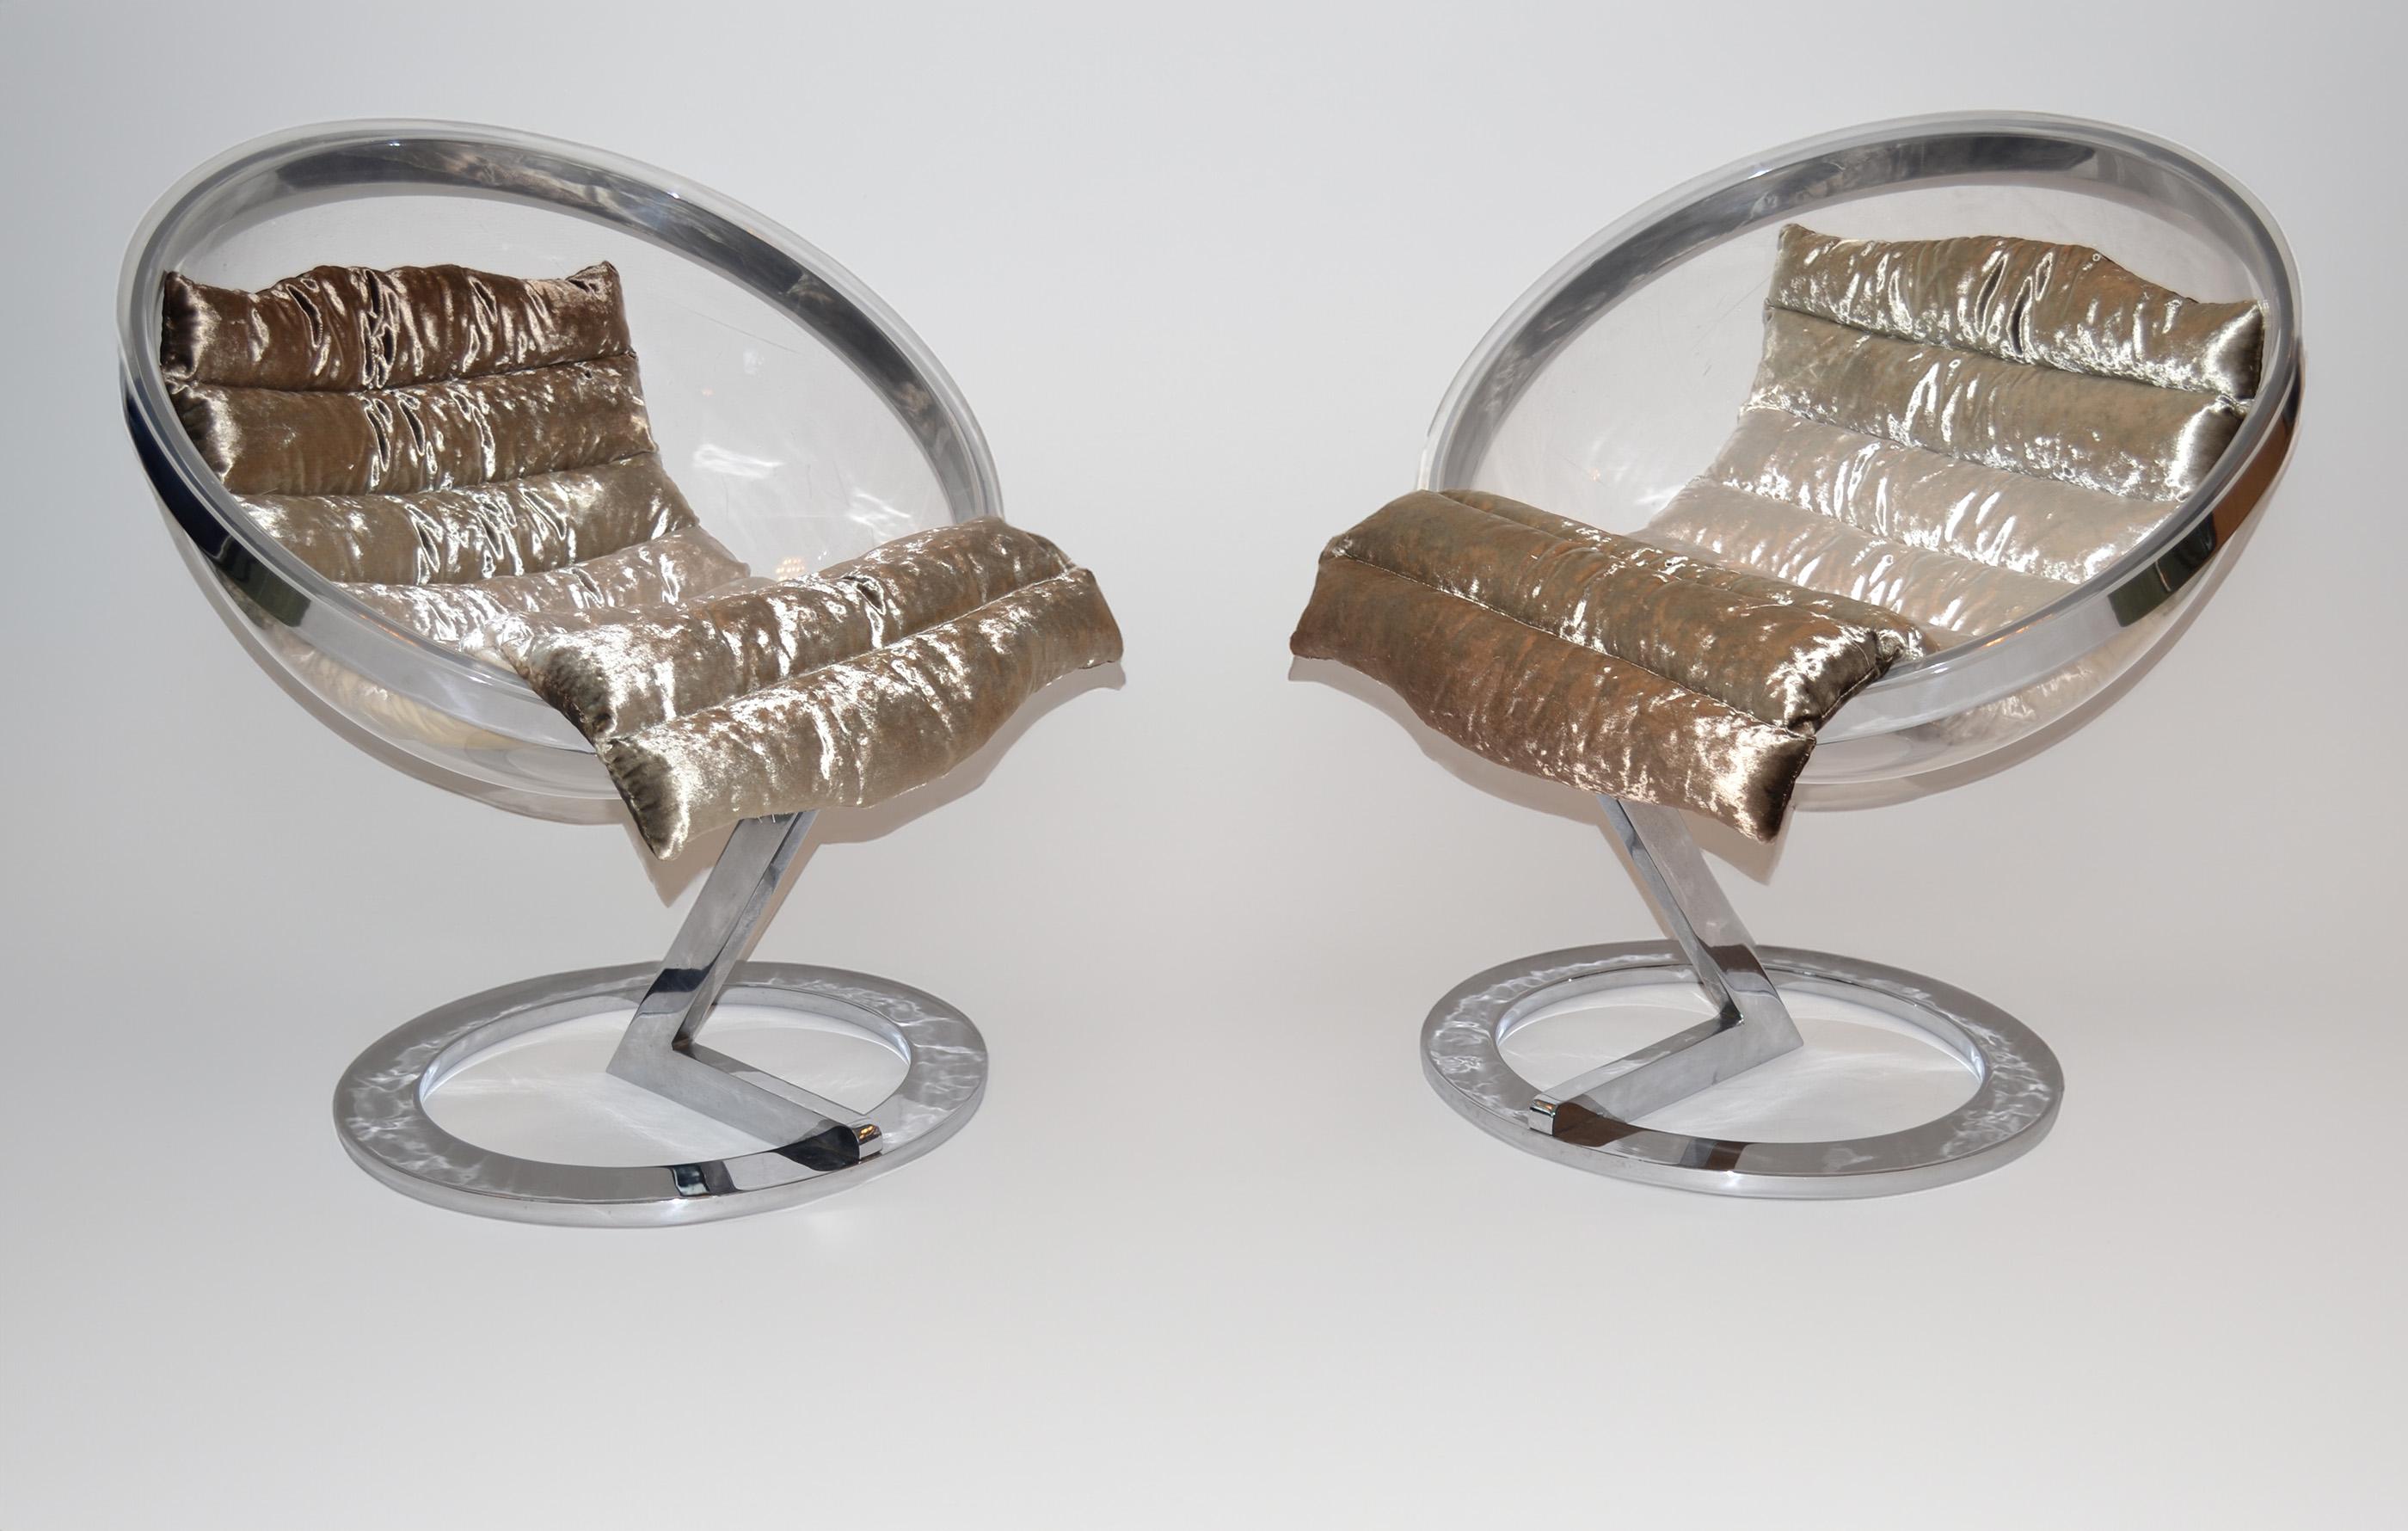 Paar Space Age-Loungesessel aus Acryl und Stahl mit Blasenform nach Daninos, 70er Jahre 
Paar seltene Freischwinger aus Lucite nach Christian Daninos, Italien 1970er Jahre
Space-Age-Design in skulpturaler Blasenform; die Halbkugel aus